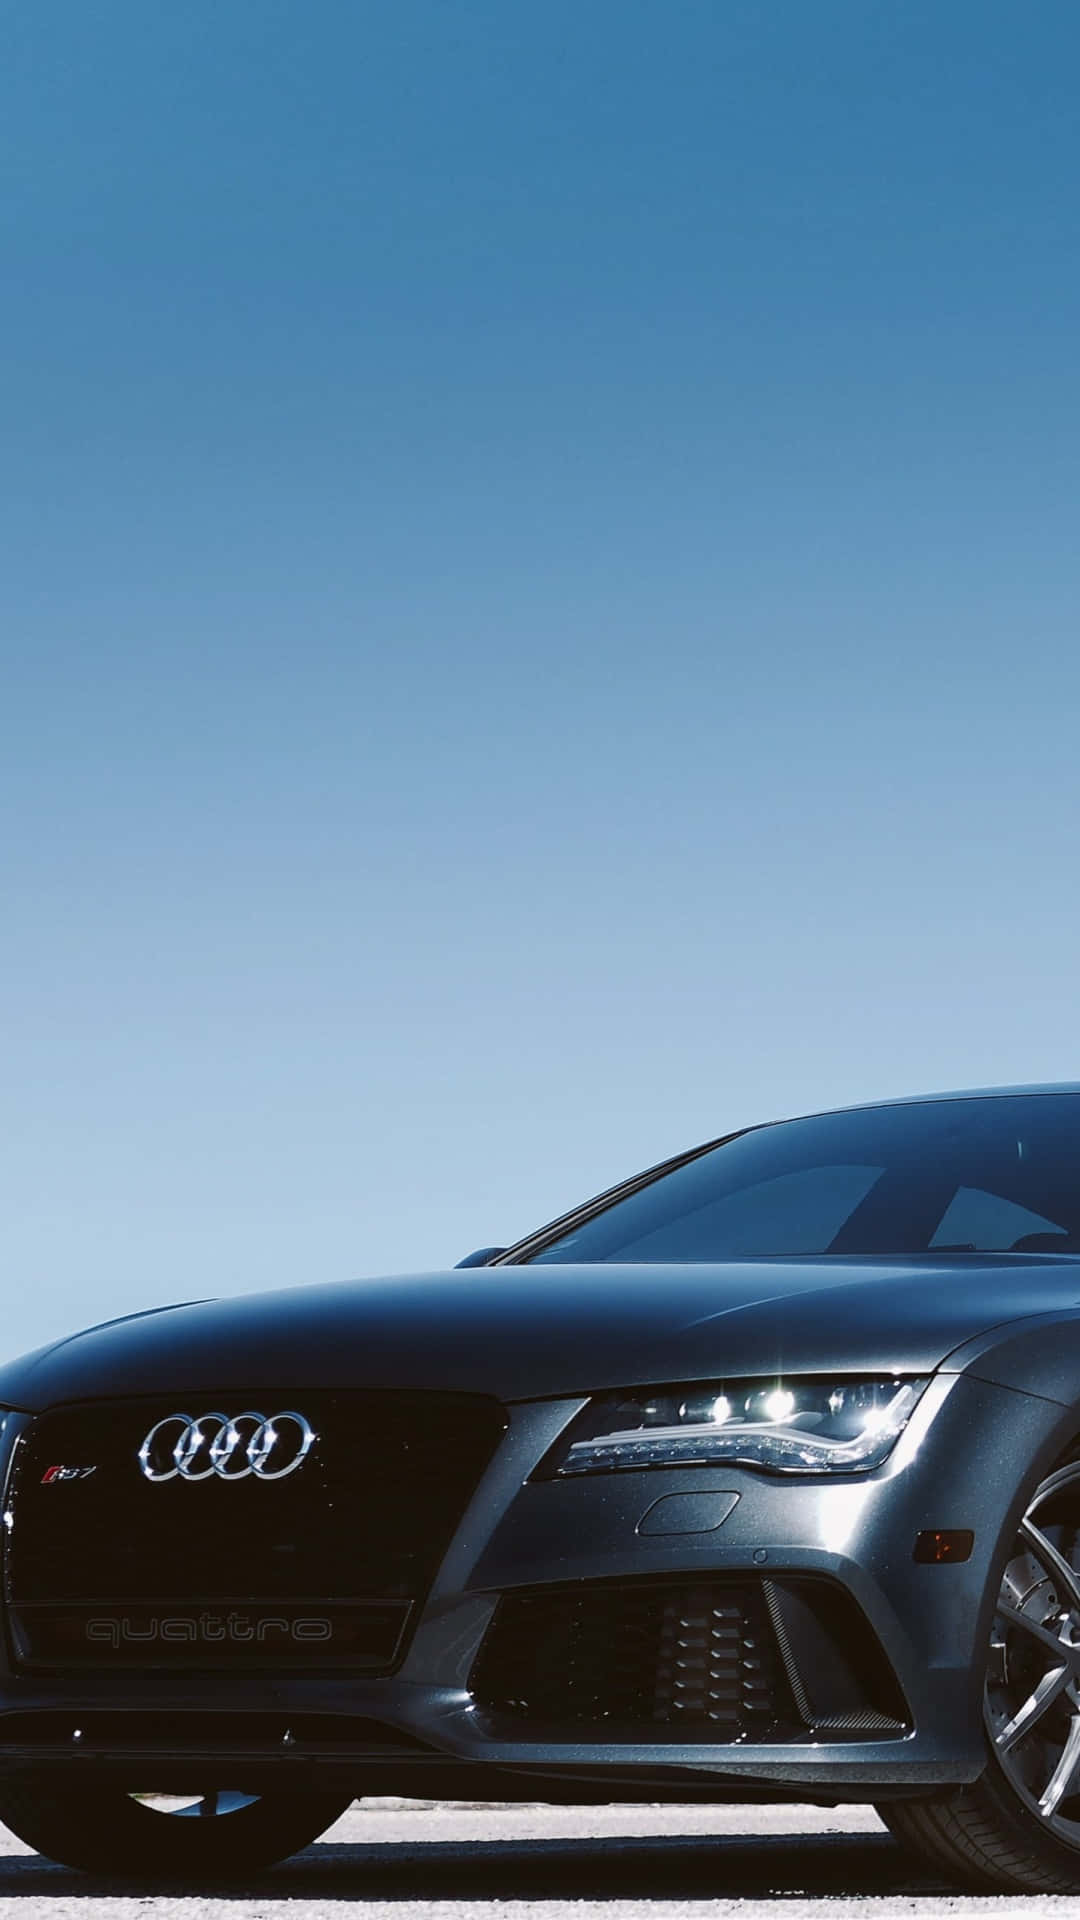 Elegantee Di Stile, Audi Su Panoramica Autostrada.